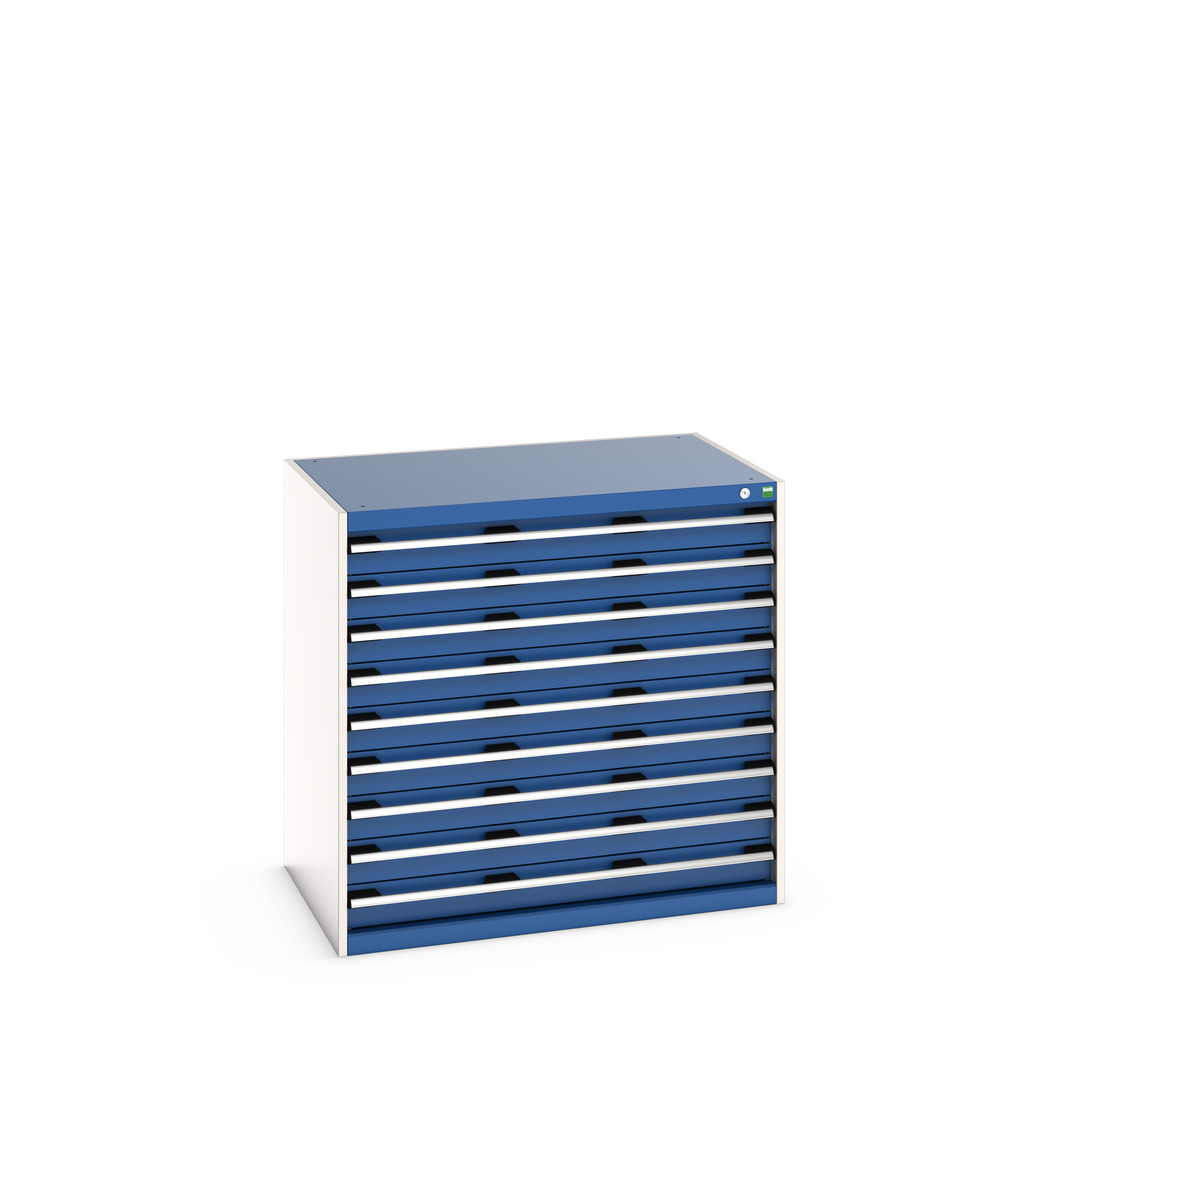 40029028.11V - cubio drawer cabinet